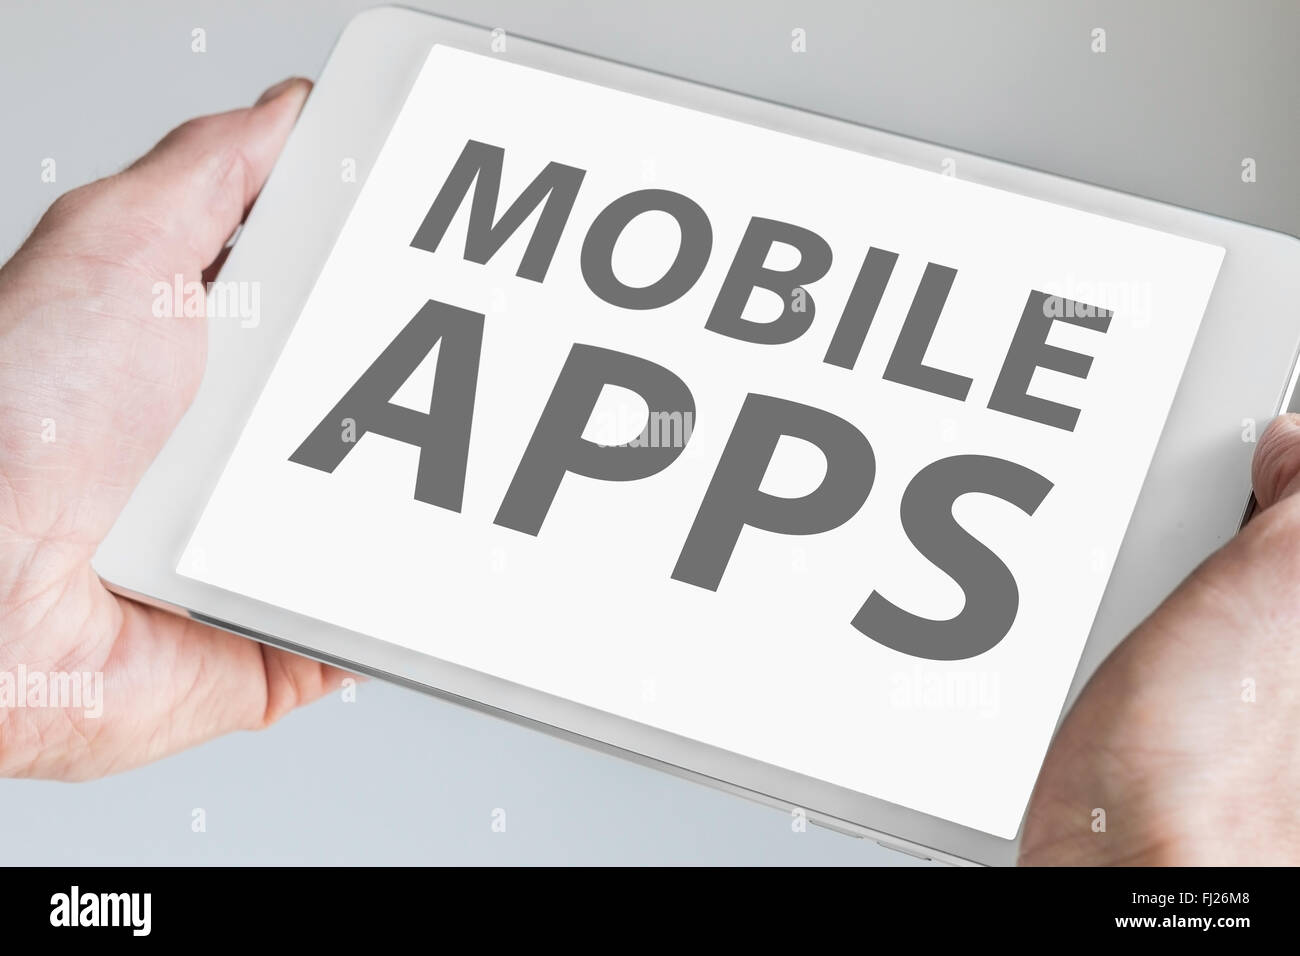 Mobile apps texte affiché sur l'écran tactile de la tablette ou smartphone. Concept pour le développement d'applications pour mobile d Banque D'Images